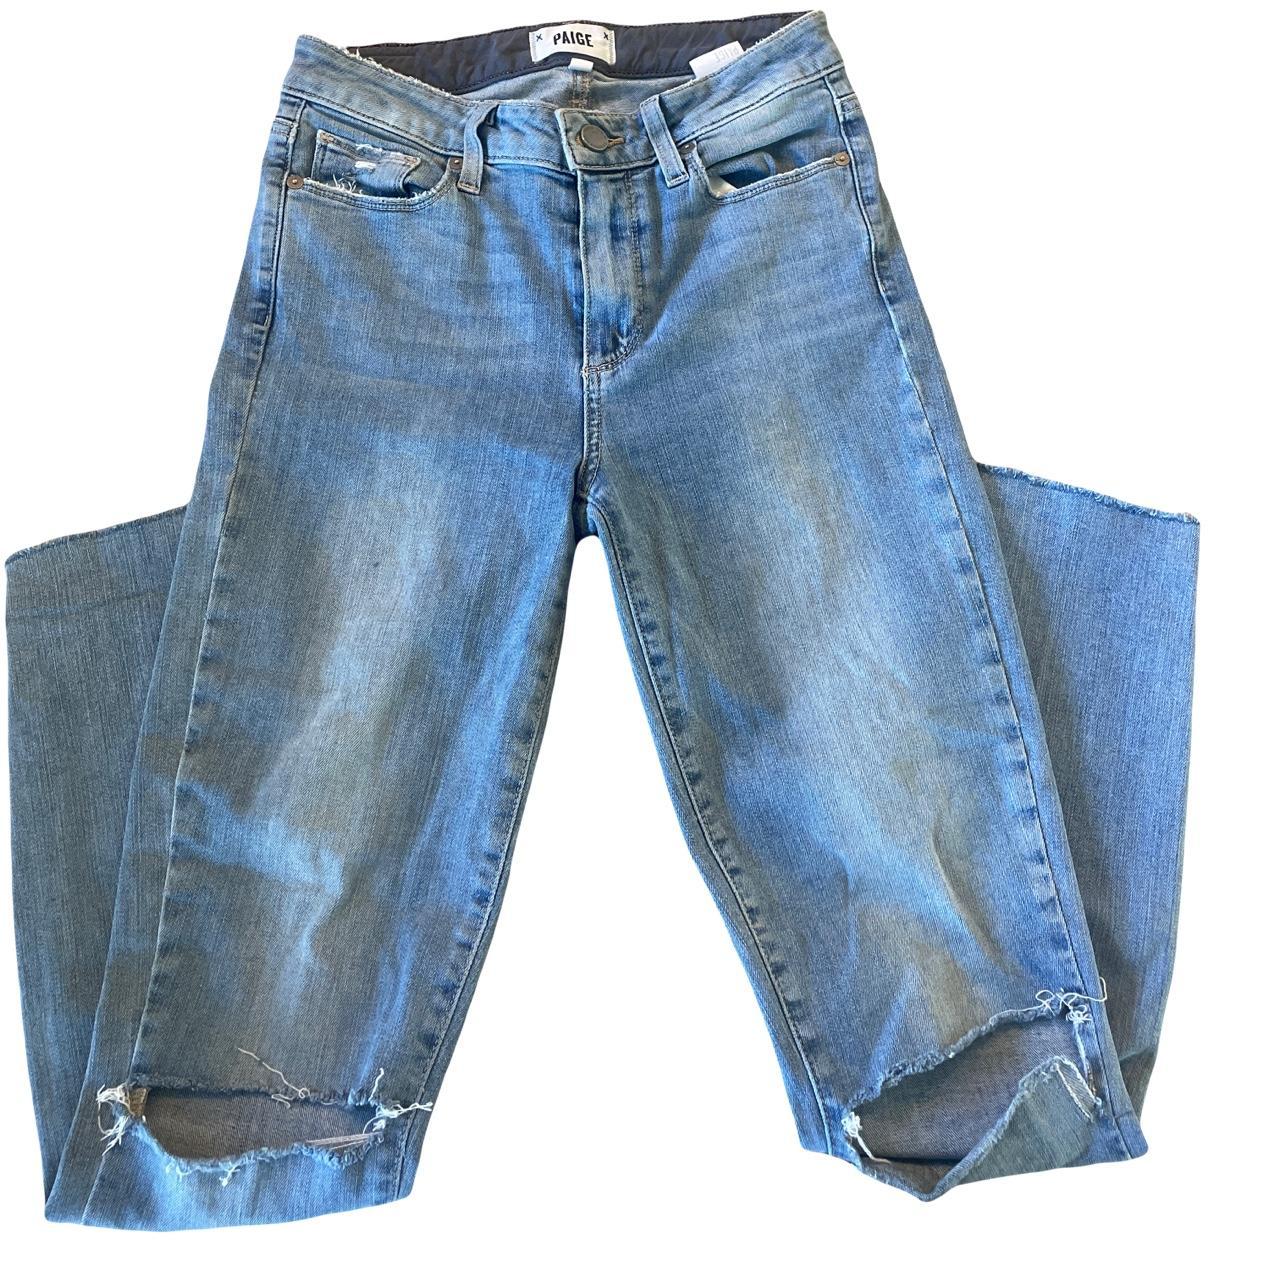 PAIGE denim skinny cutoff jeans -size 25 -mid... - Depop